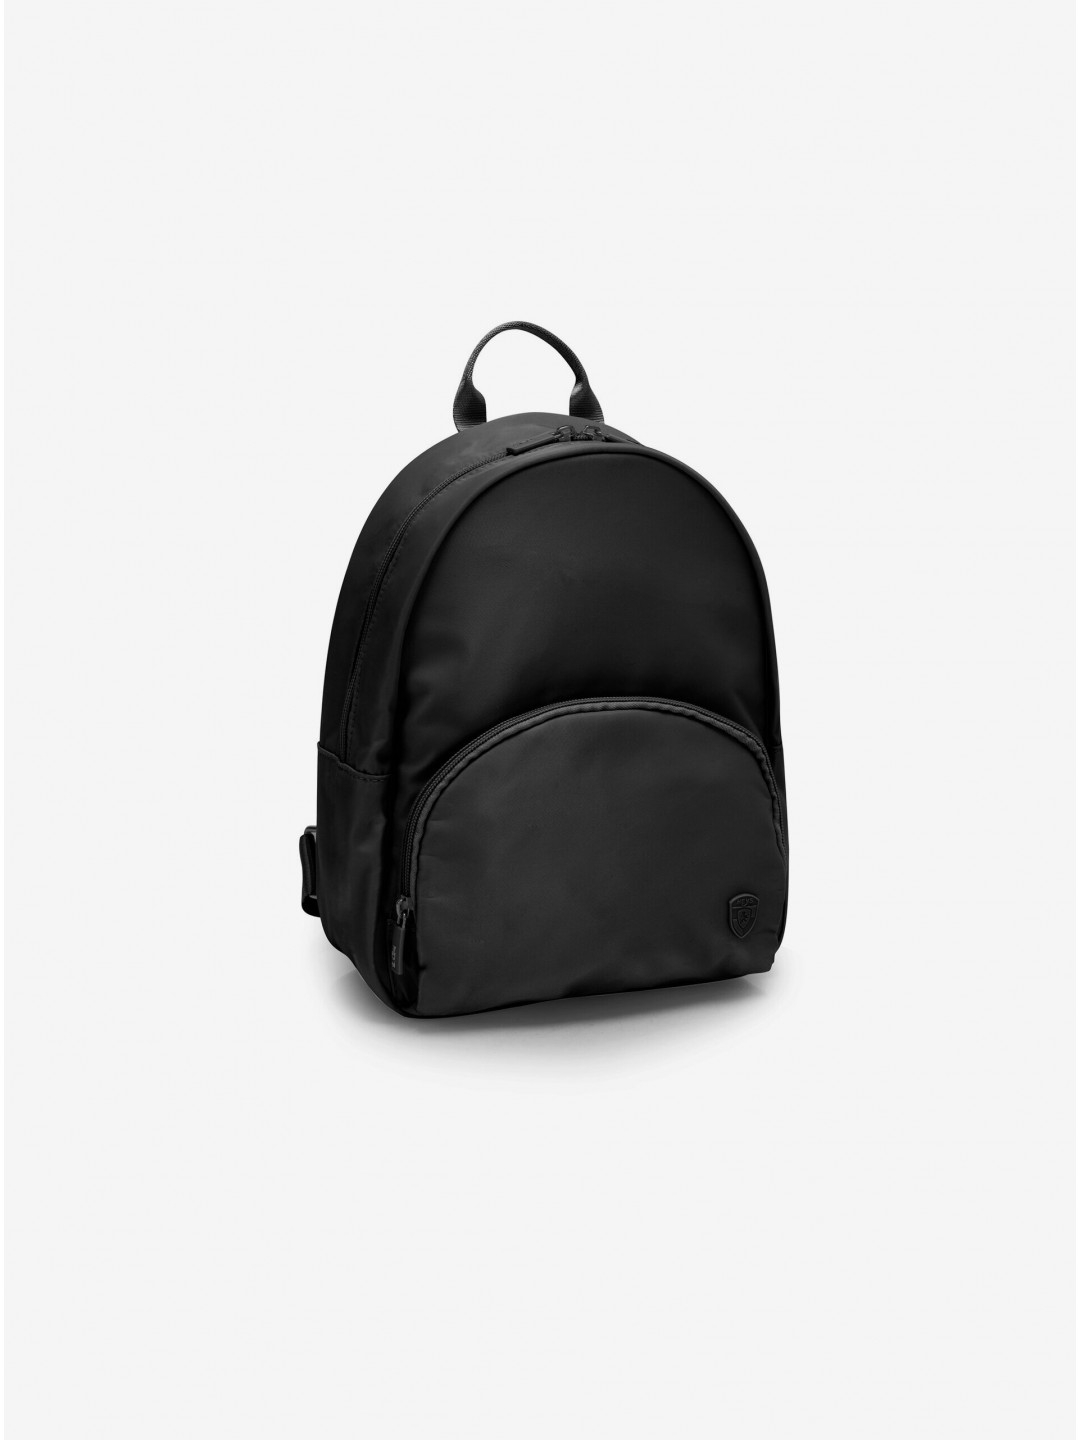 Černý dámský batoh Heys Basic Backpack Black